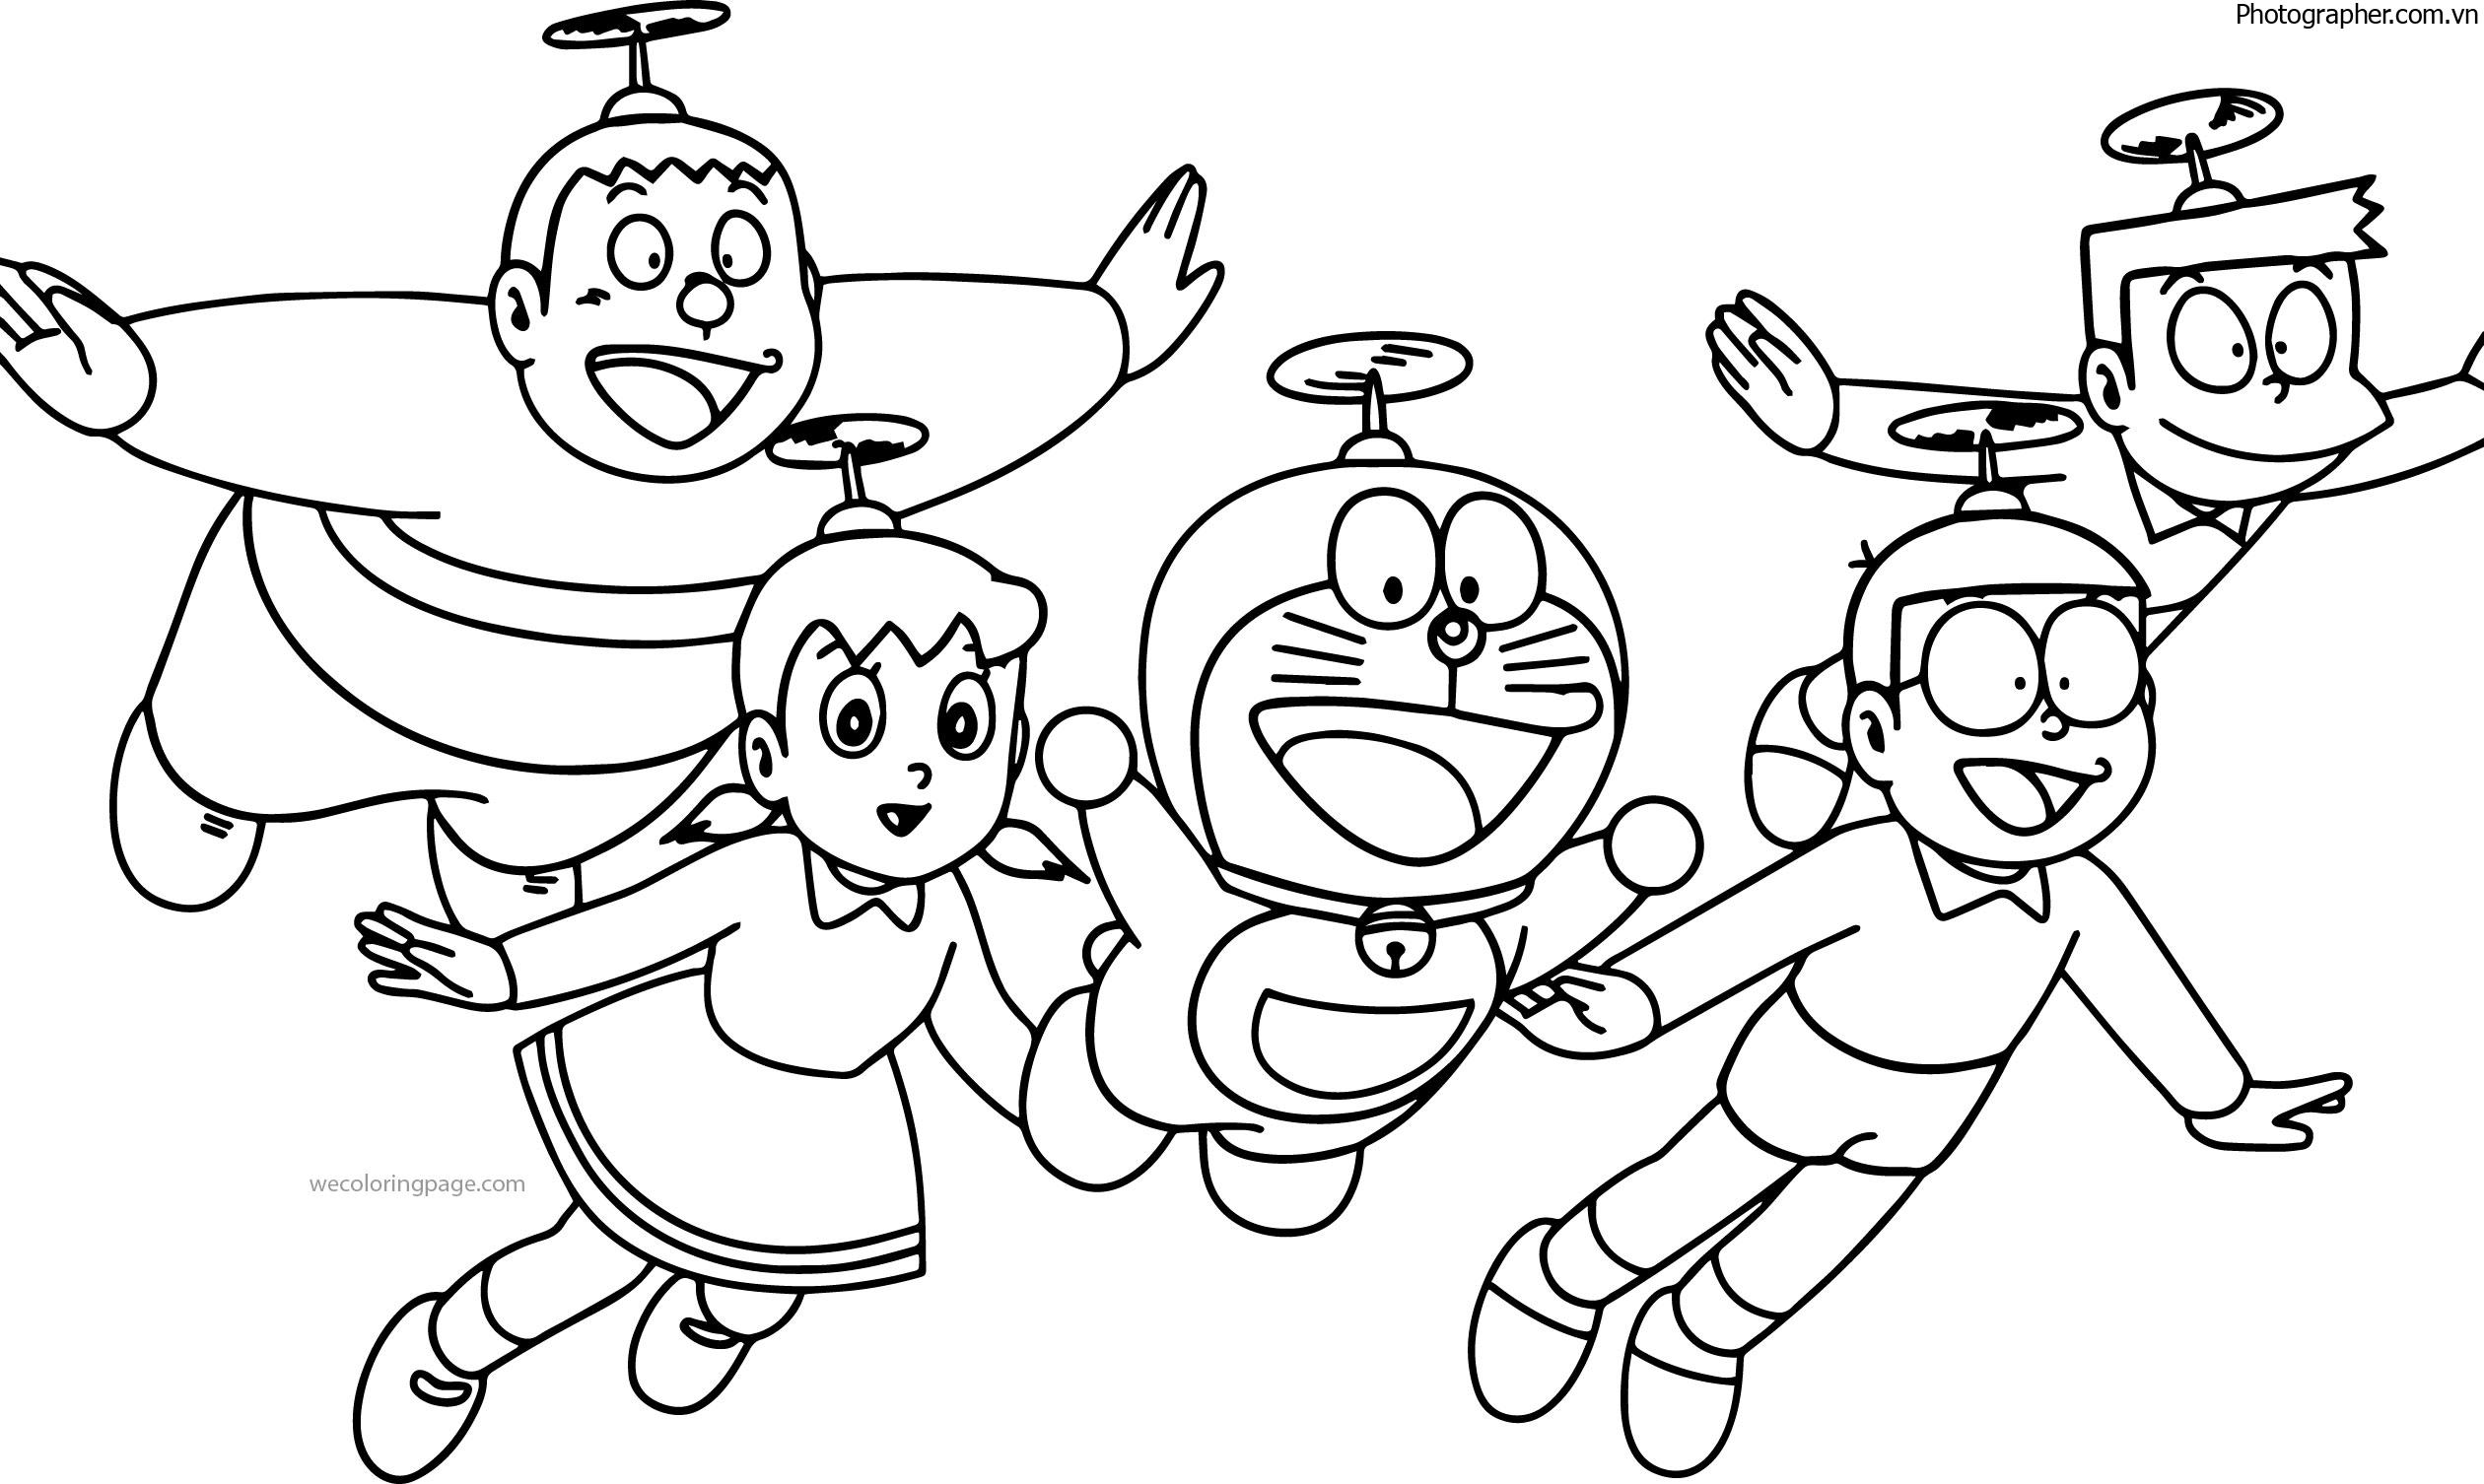 Tranh tô màu Doraemon và những người bạn biết bay